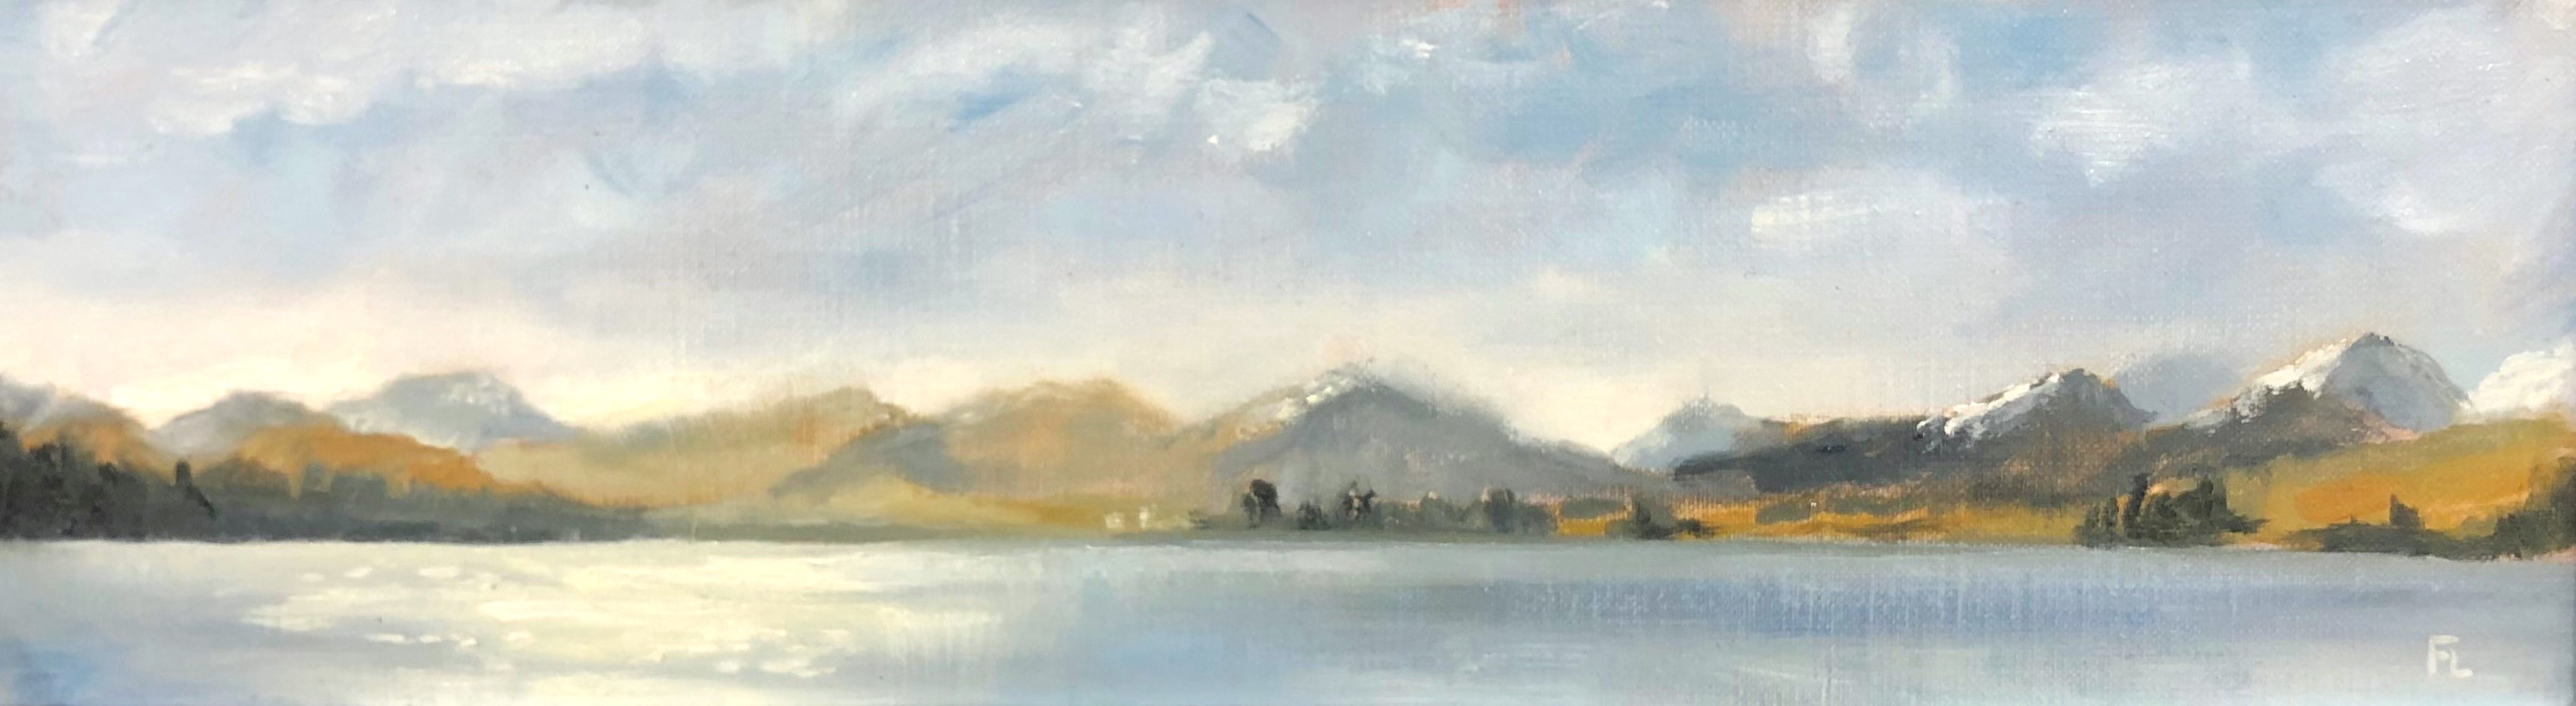 'Loch Tulla' by artist Fiona Longley